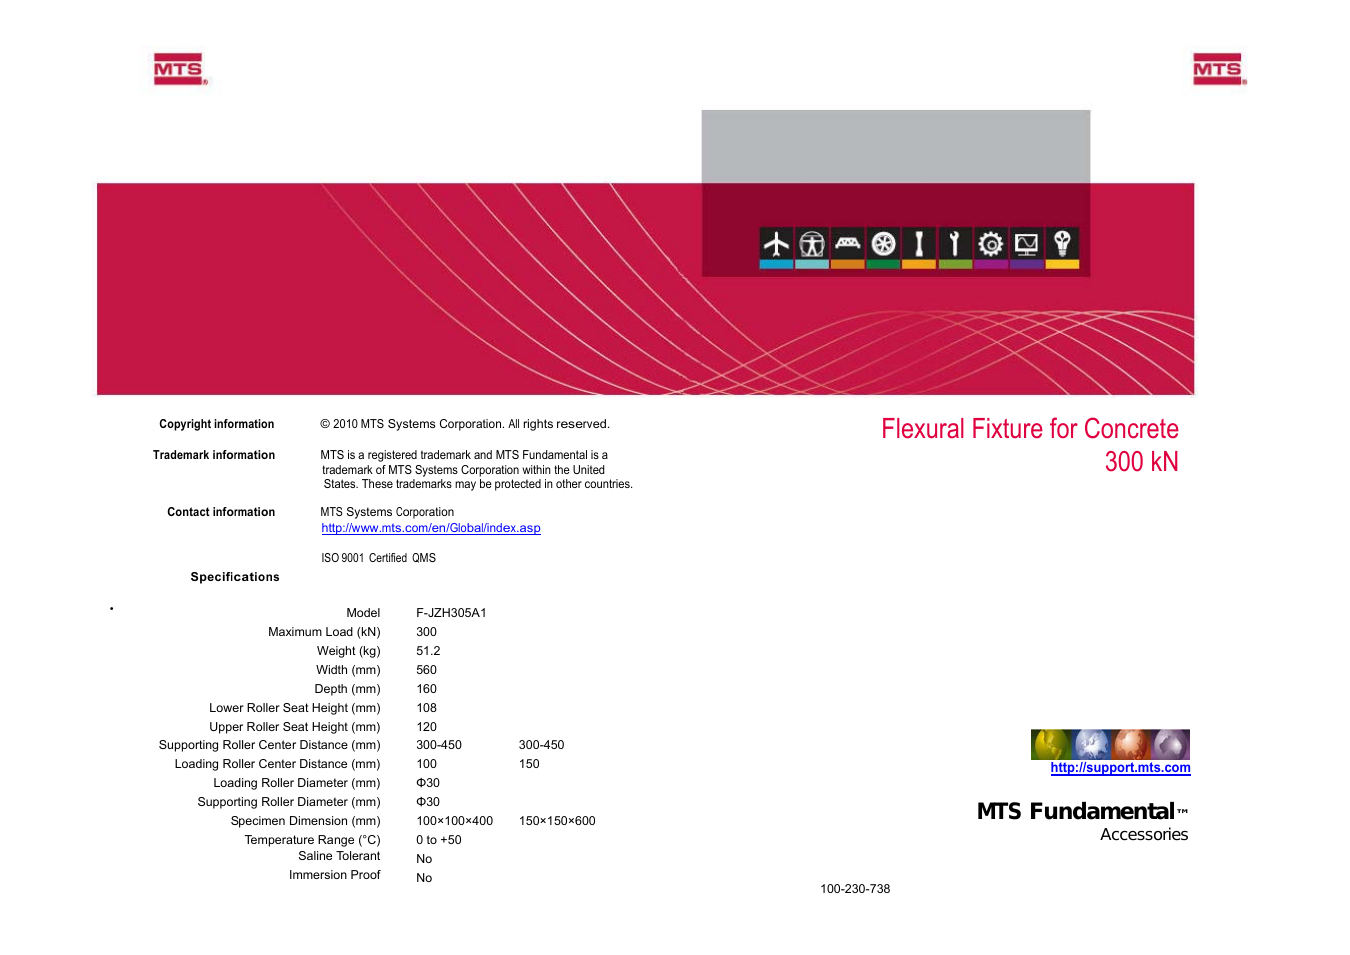 Flexural Fixture for Concrete-300 kN